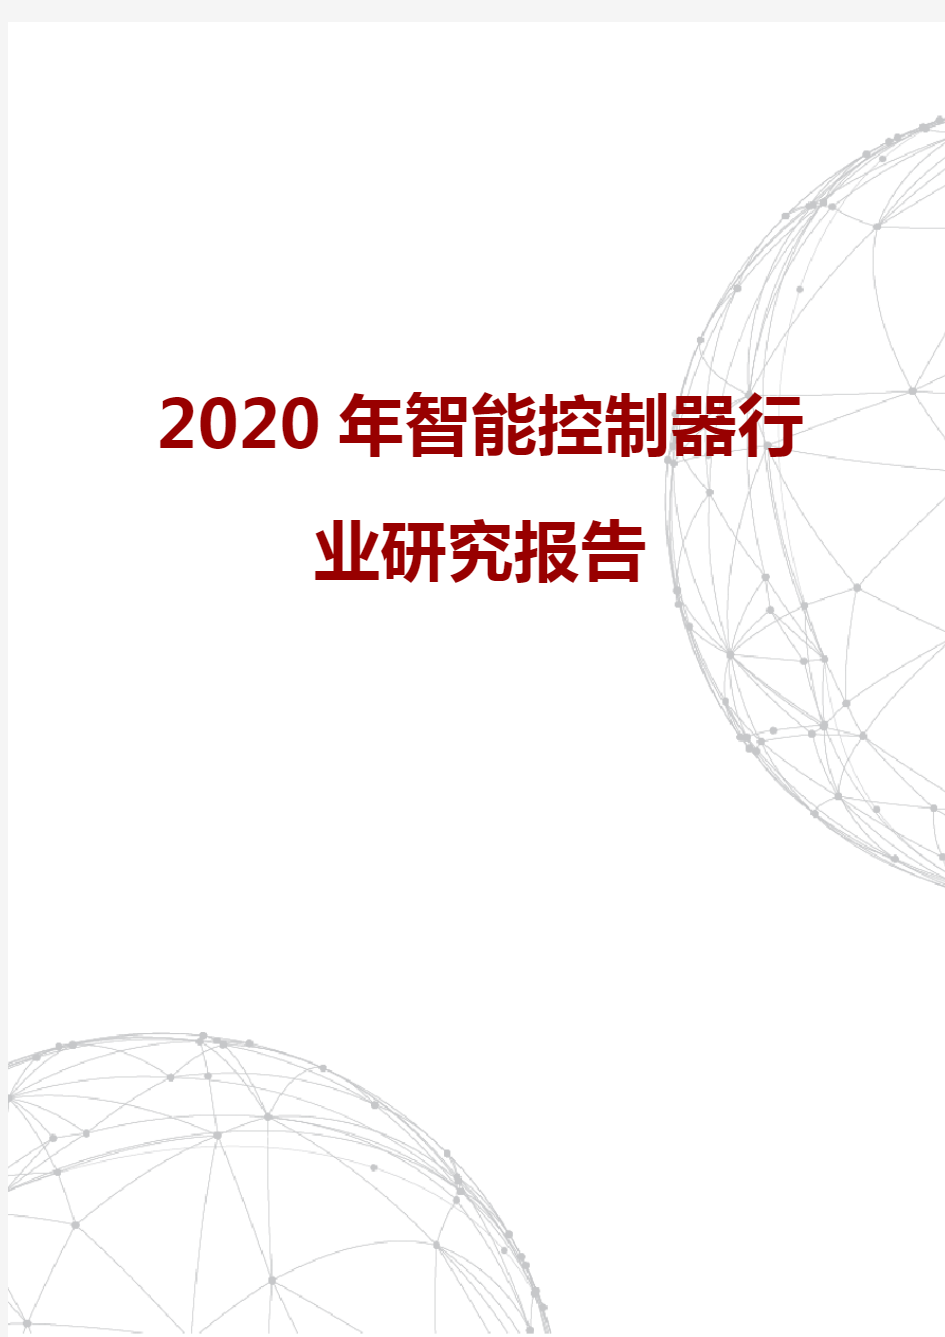 2020年智能控制器行业研究报告